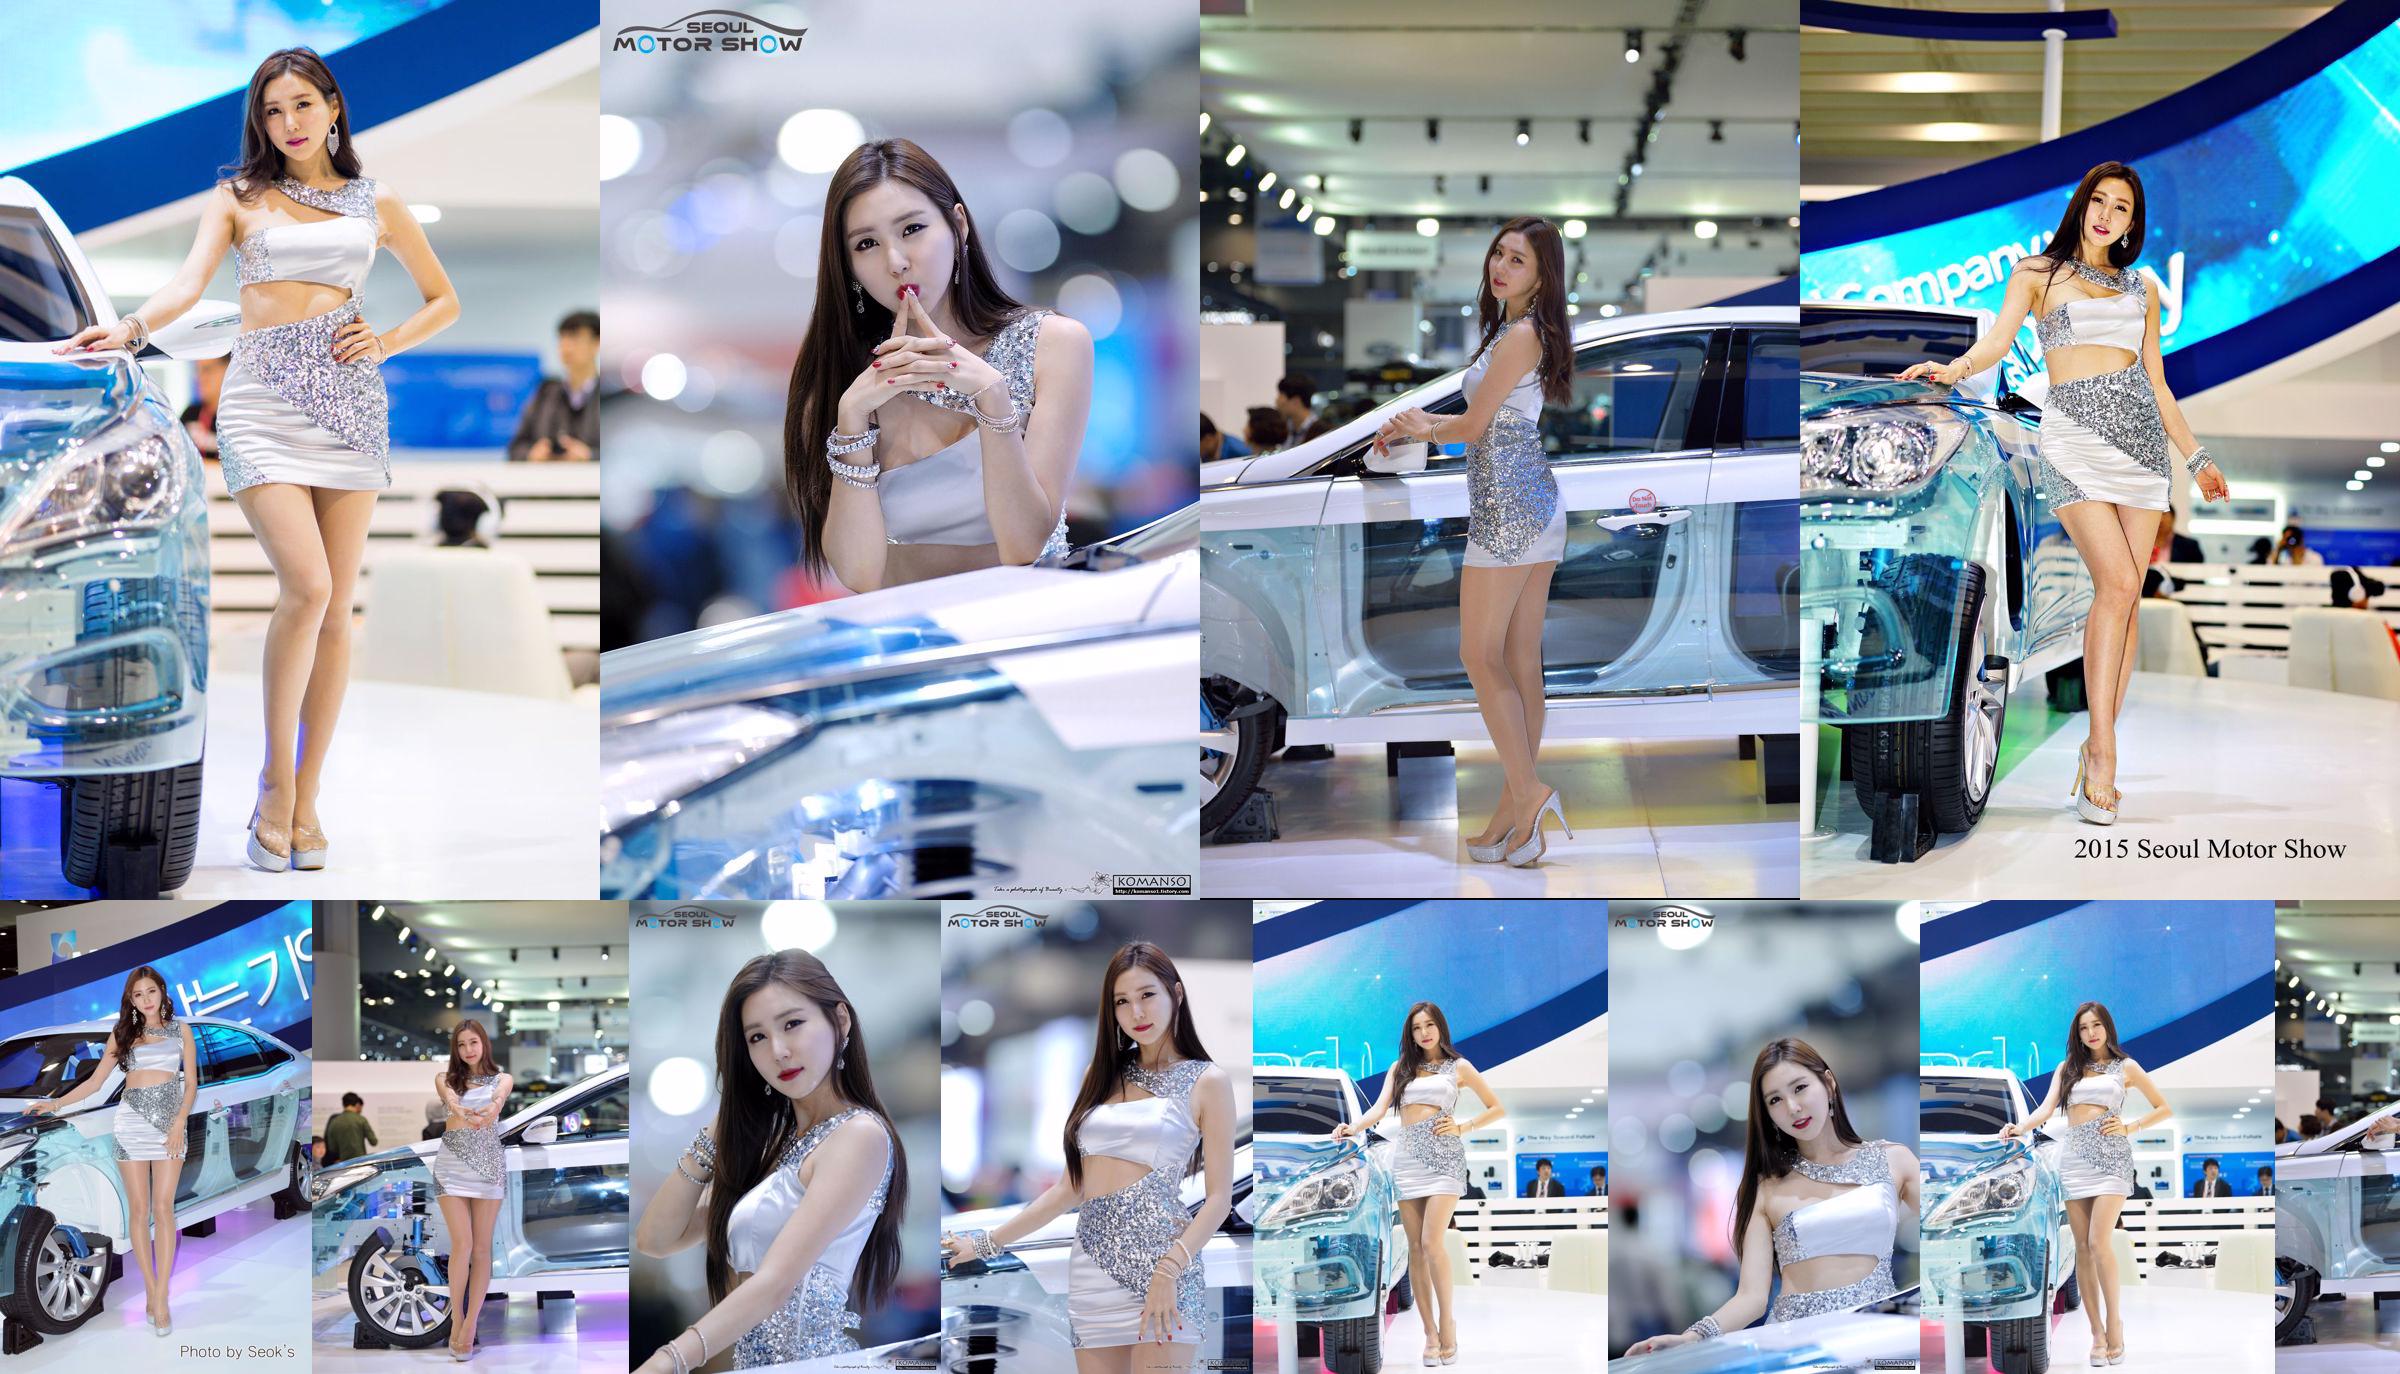 Modelo de coche coreano Choi Yujin-Auto Show Colección de imágenes No.f8ebeb Página 5